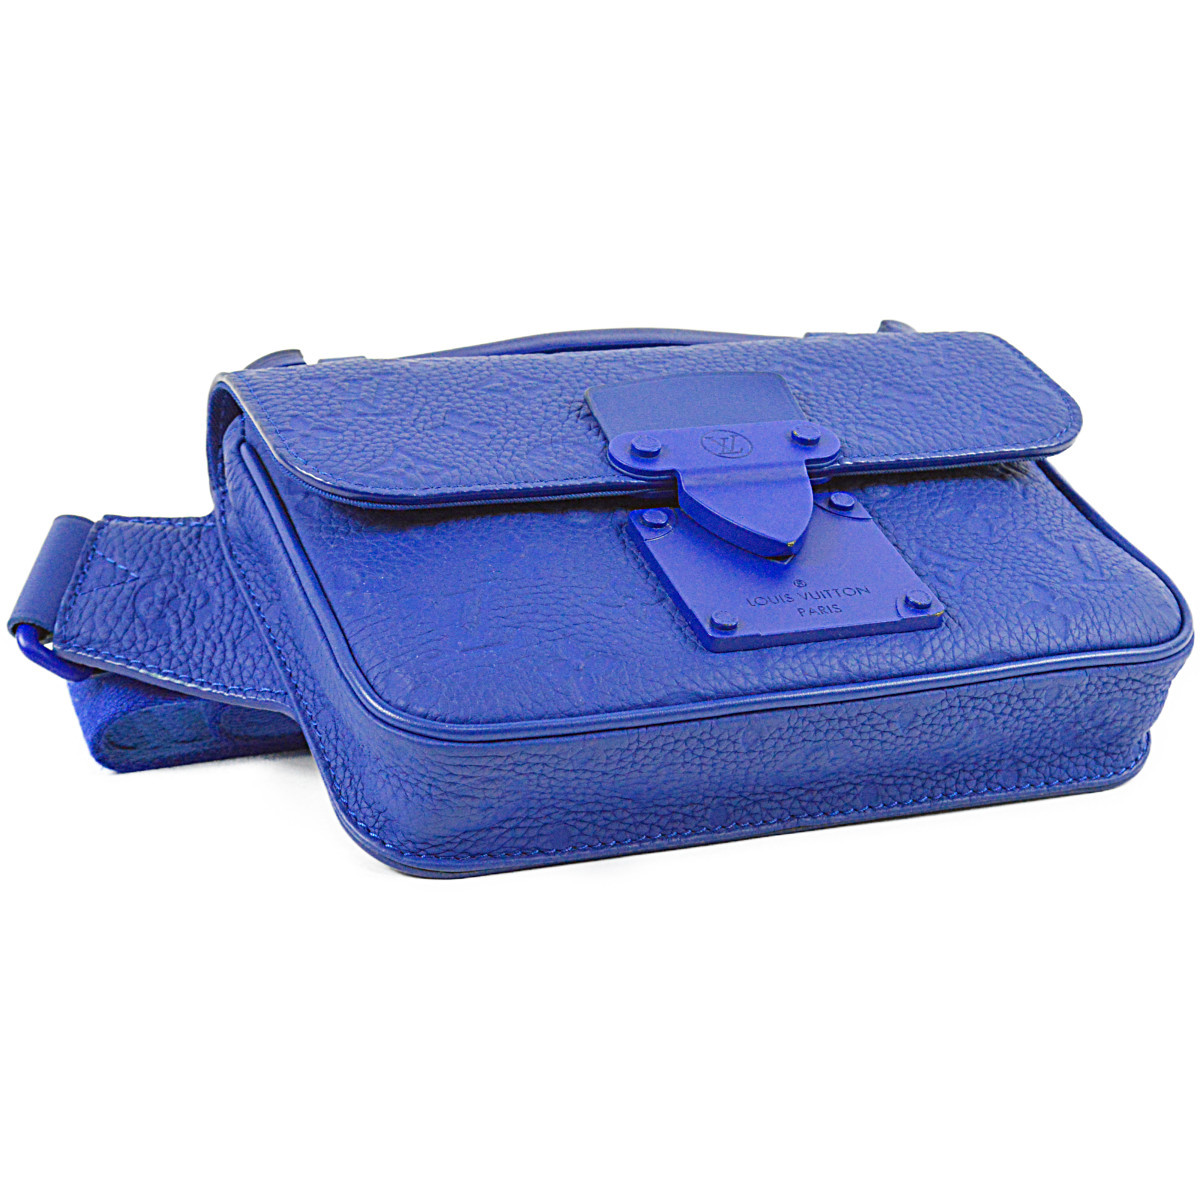  Louis * Vuitton прекрасный товар S блокировка sling сумка голубой toliyon кожа мужской сумка "body" плечо M58486 LOUIS VUITTON